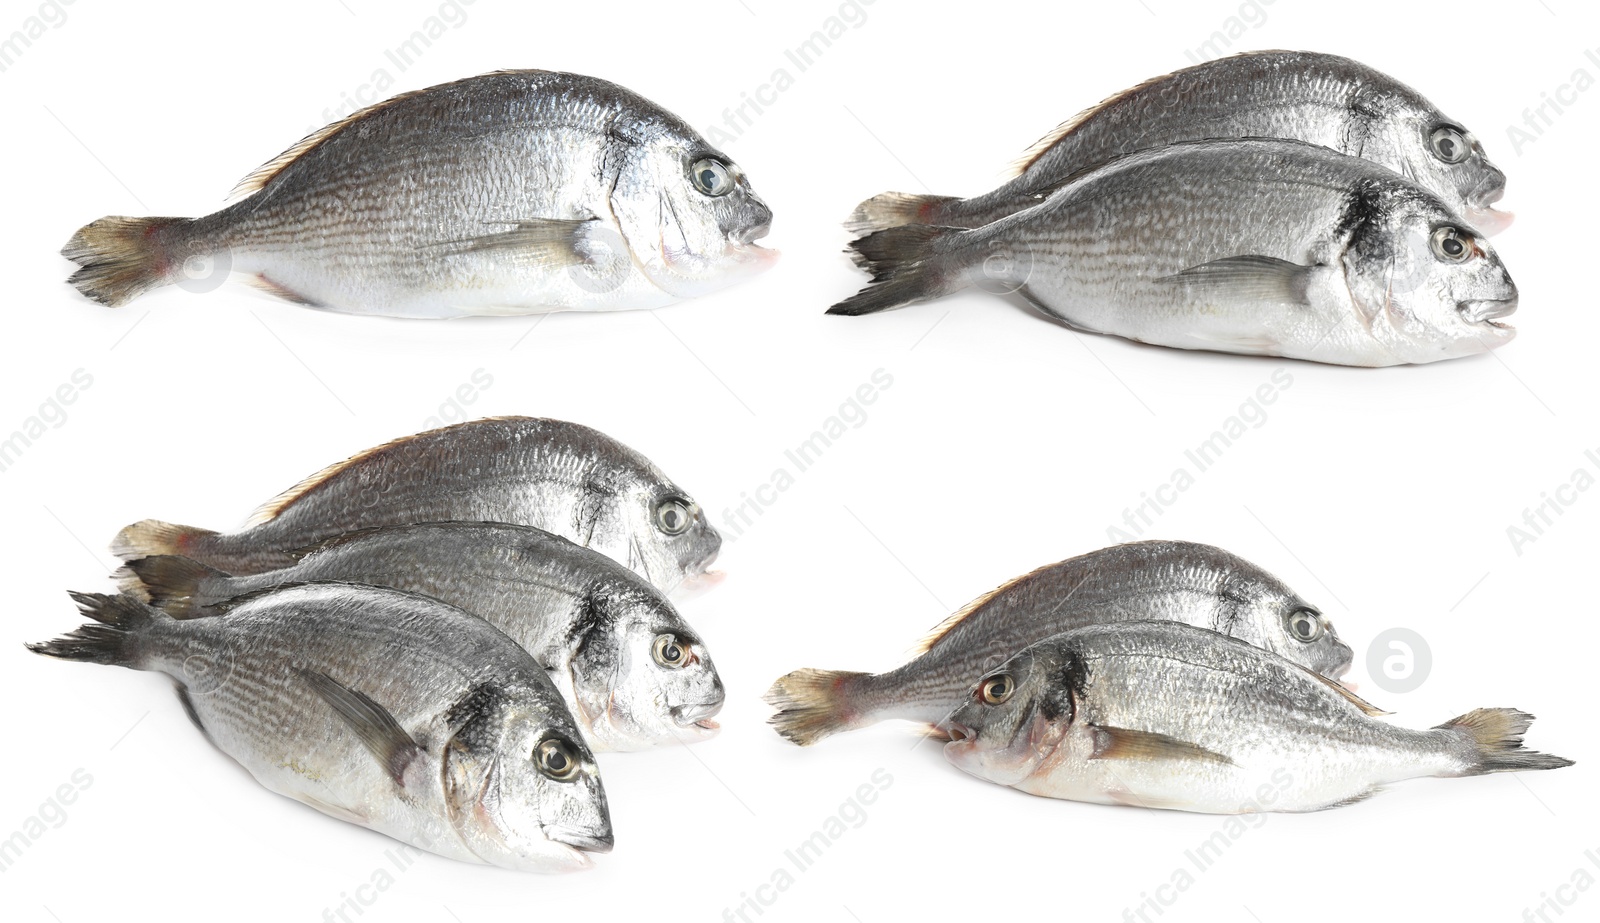 Image of Set of fresh raw dorada fish on white background